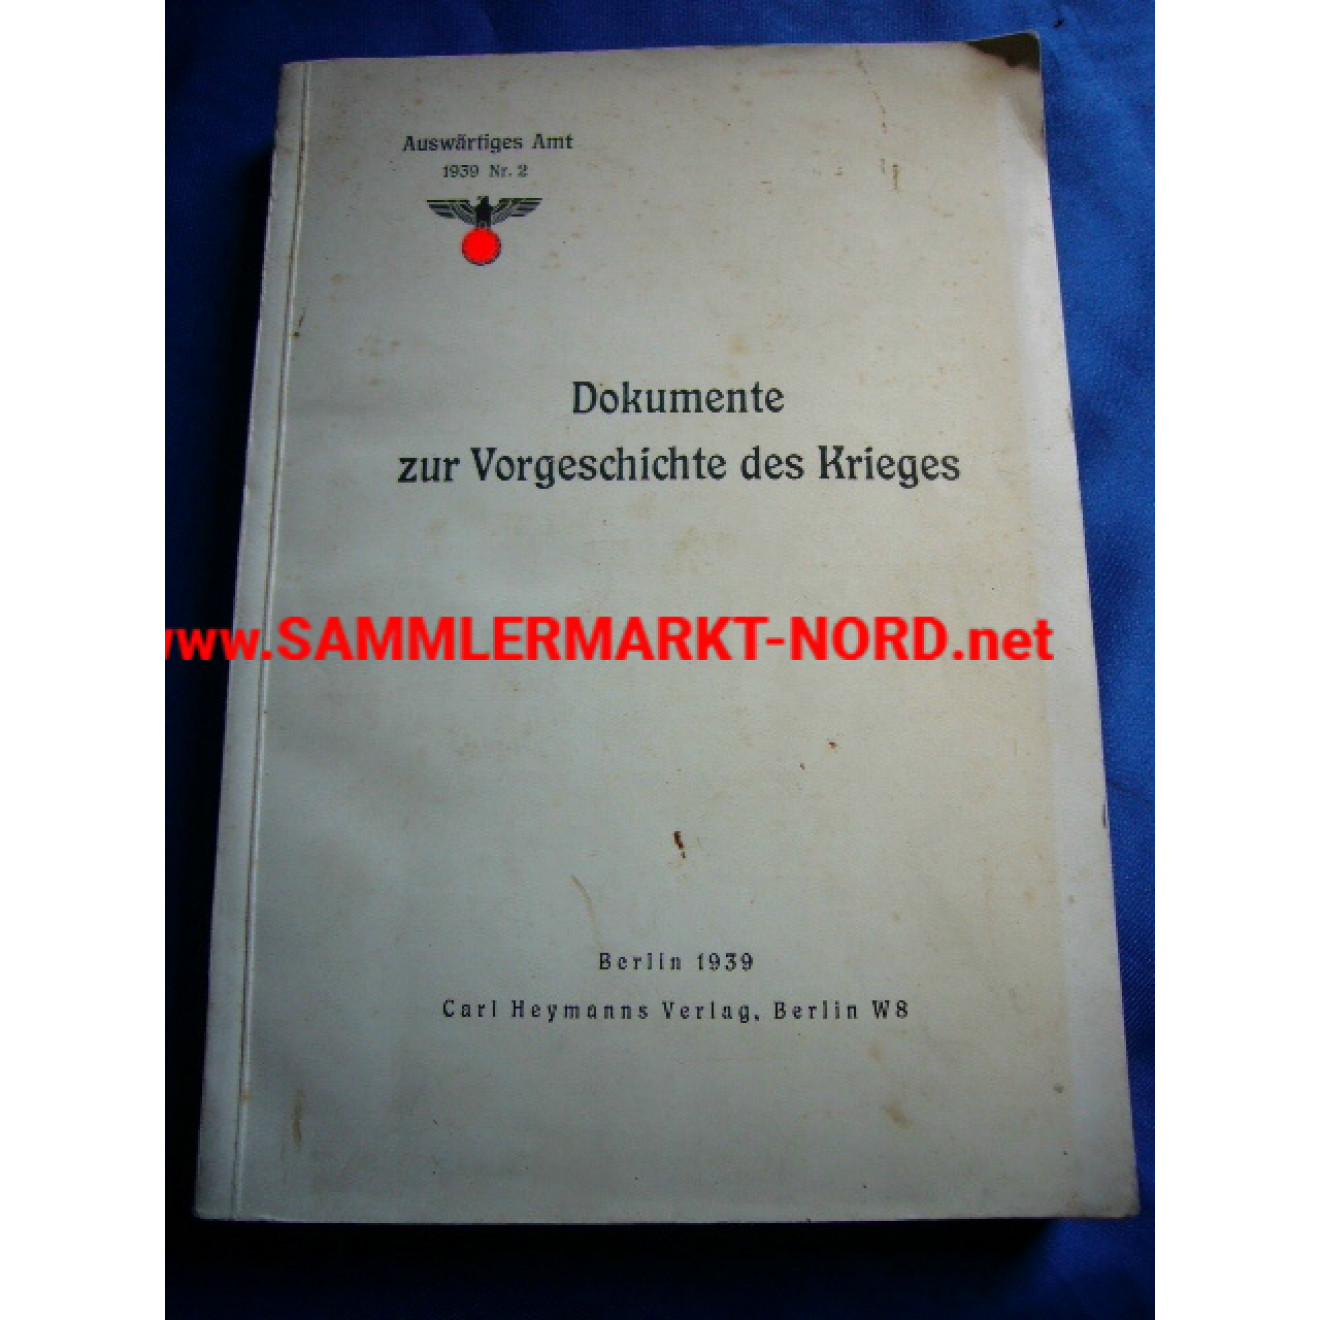 Dokumente zur Vorgeschichte des Krieges (Foreign Office 1939 Nr.